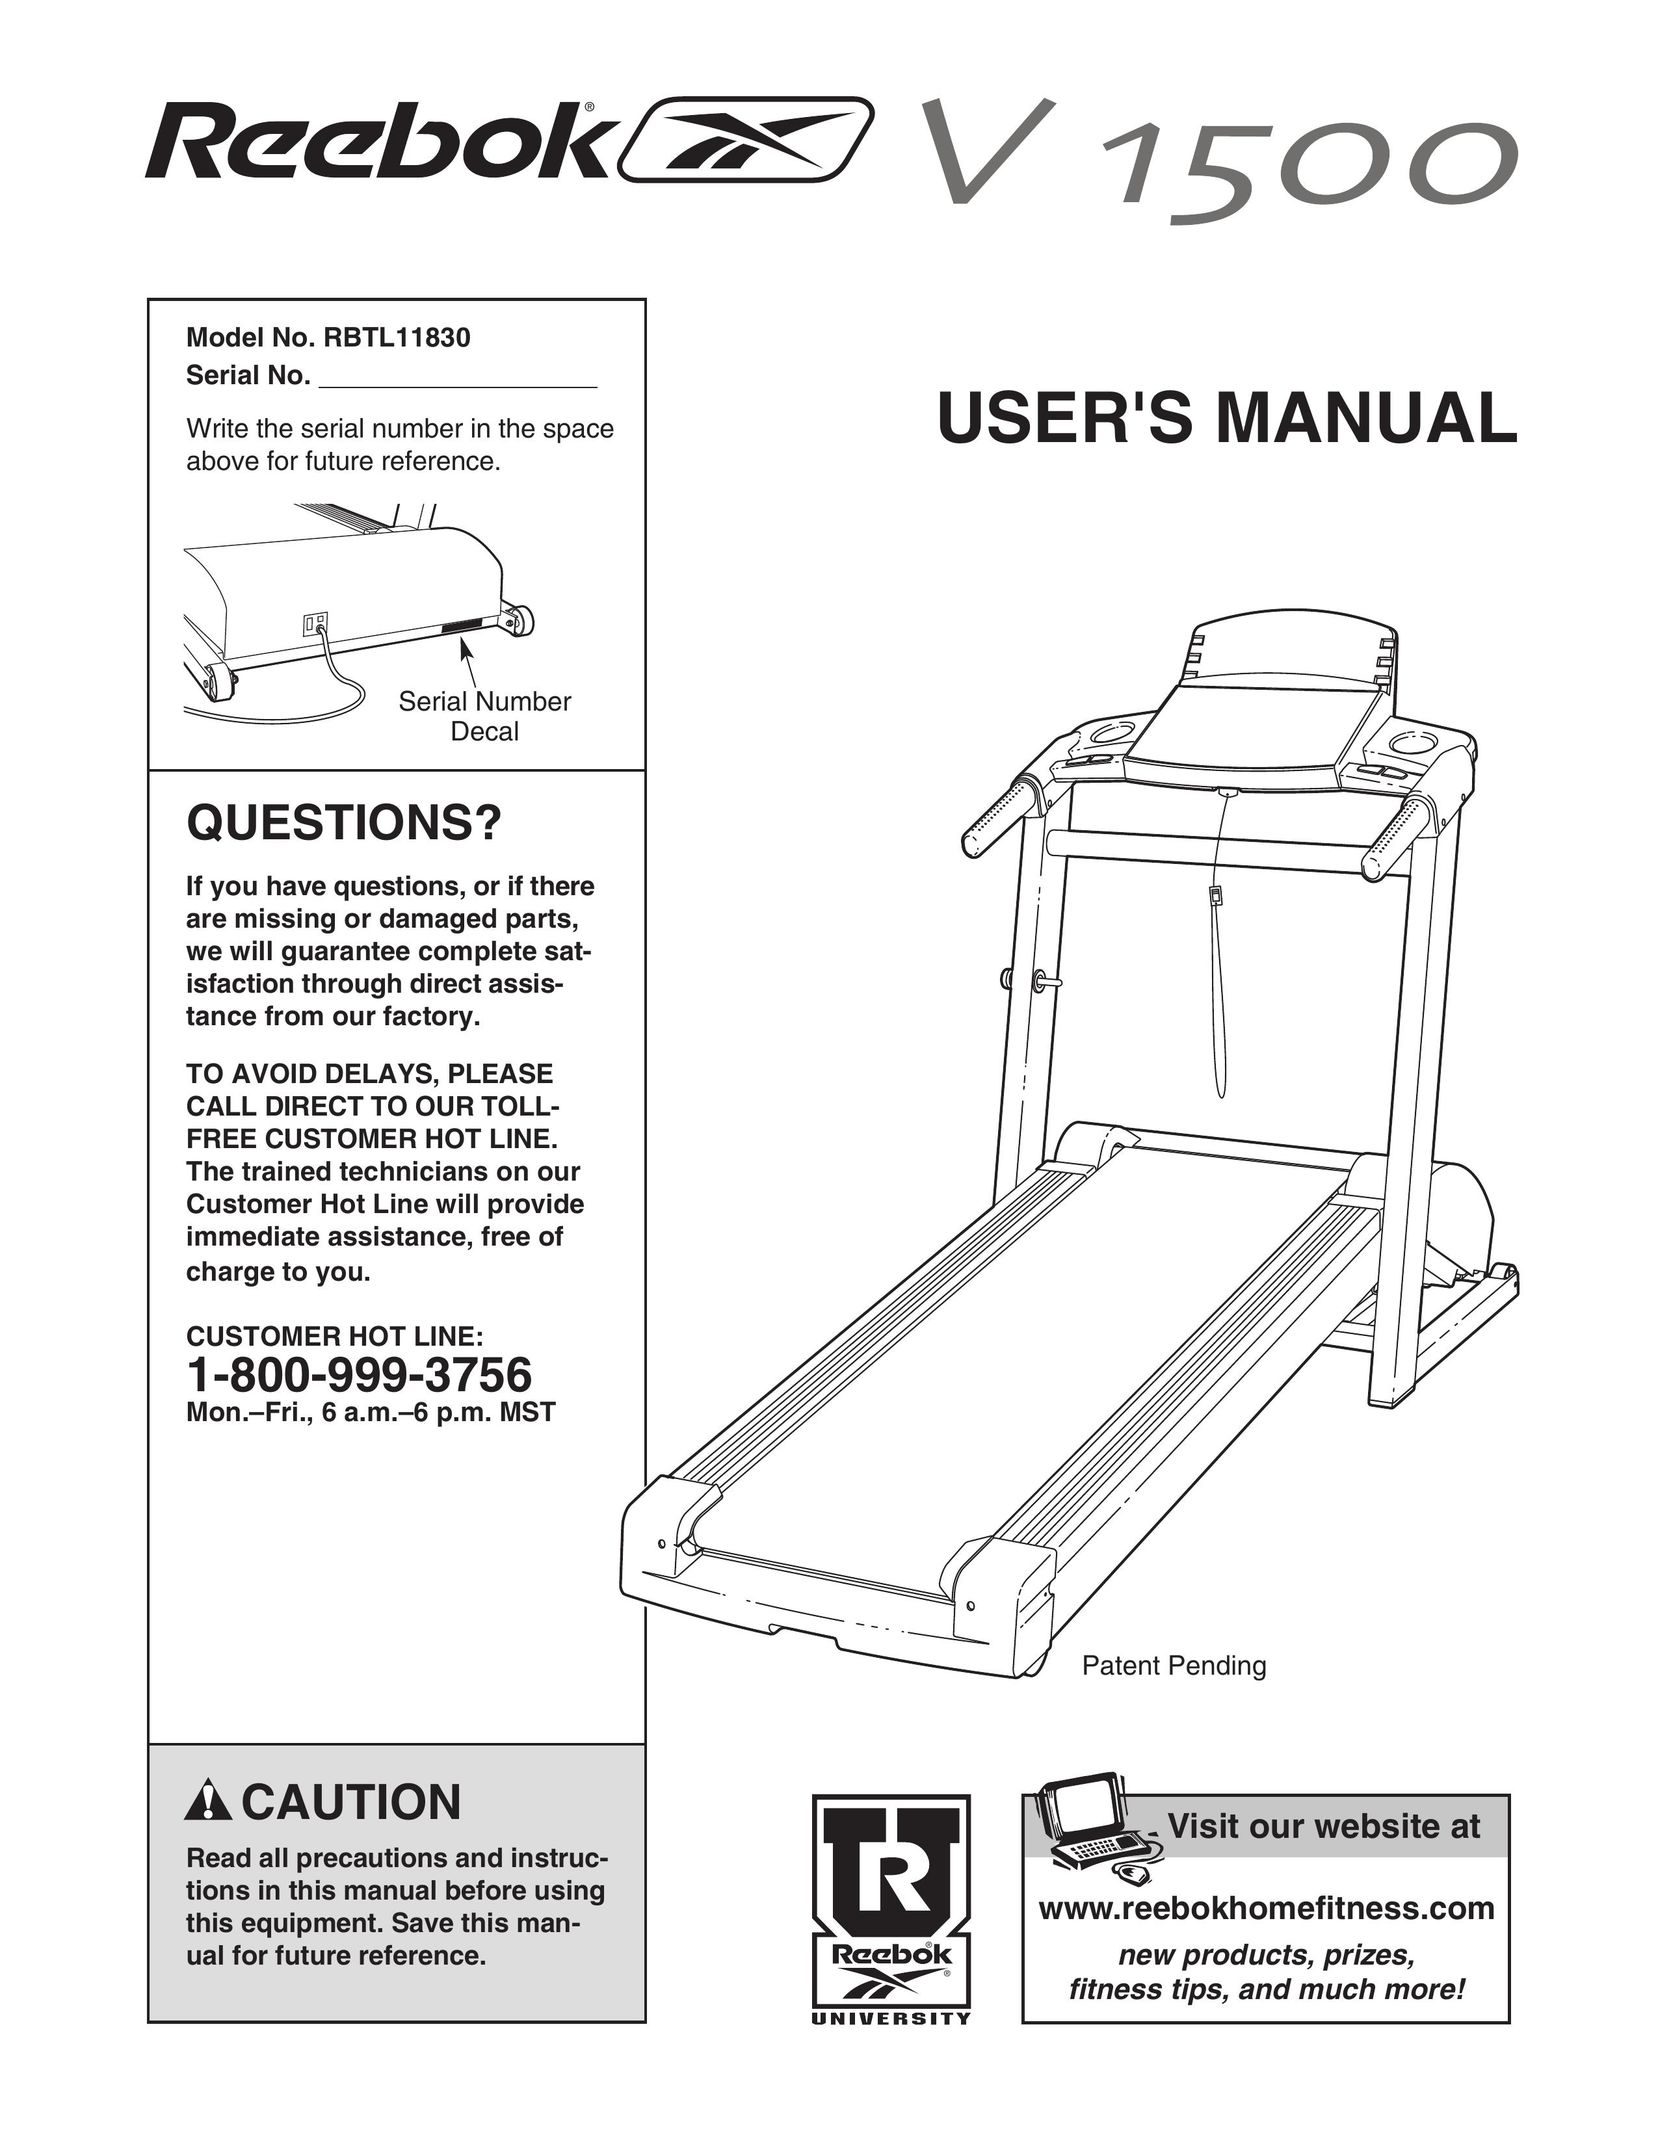 Reebok Fitness RBTL11830 Treadmill User Manual